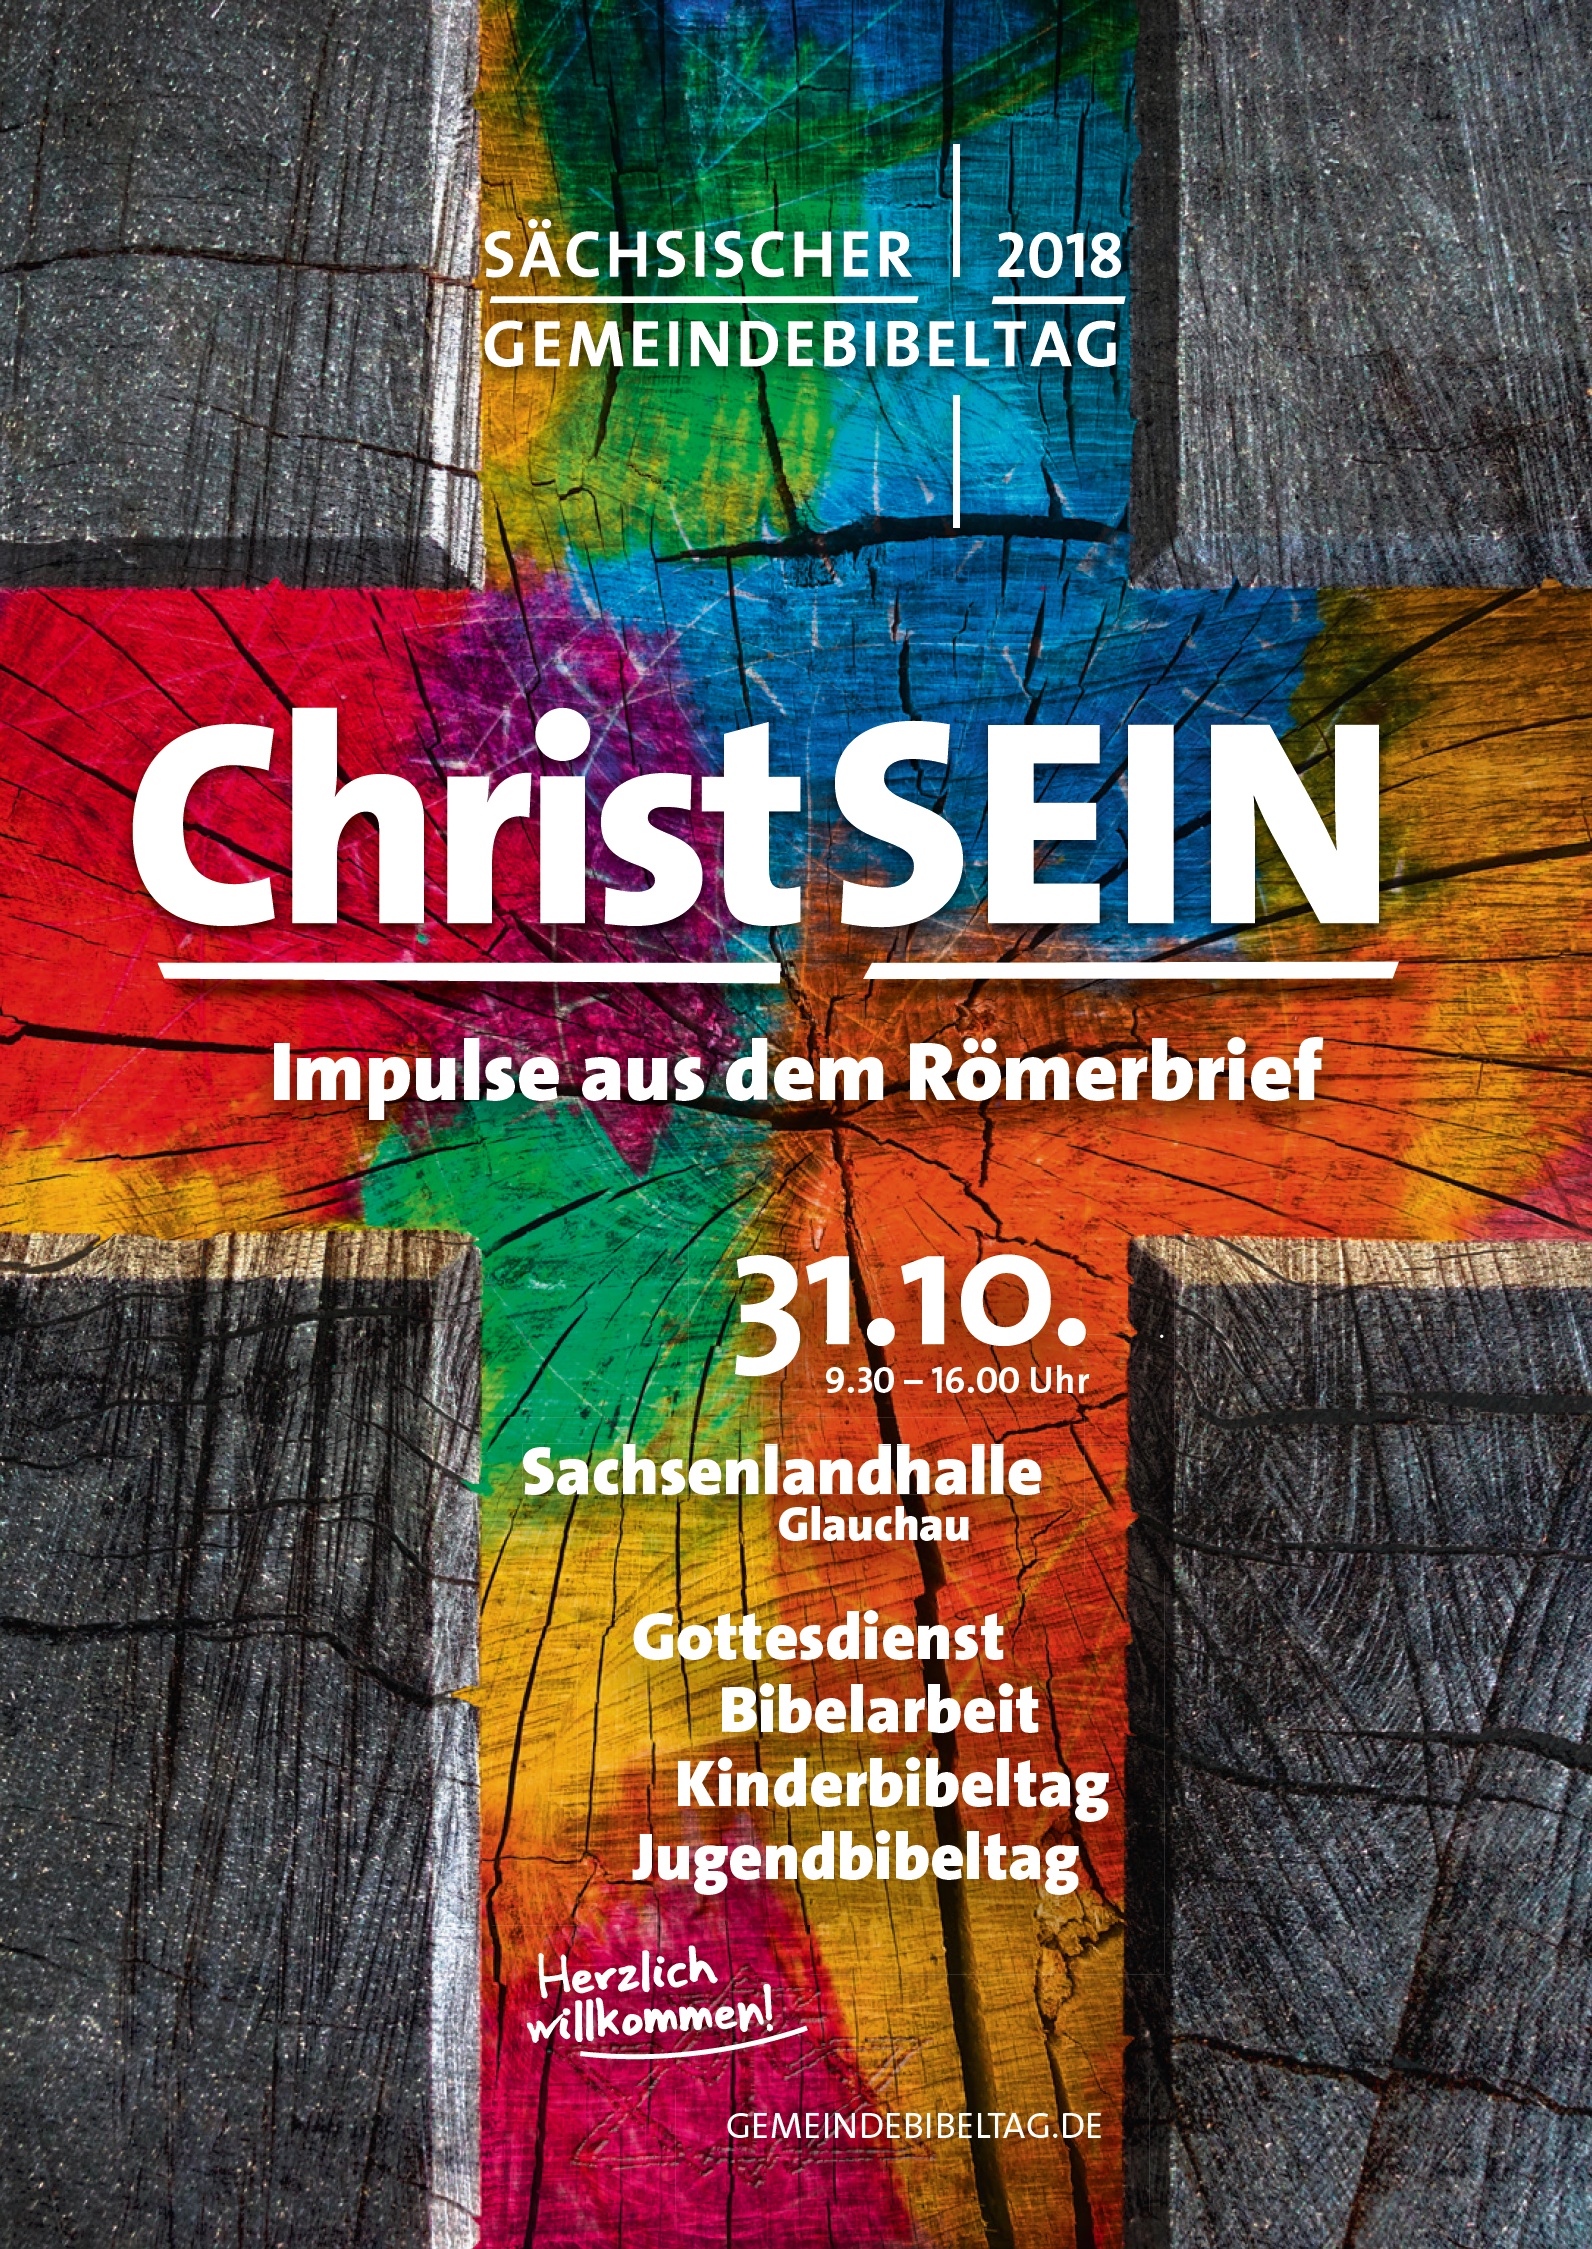 Sächsischer Gemeindebibeltag 2018 - „Christsein – Impulse aus dem Römerbrief